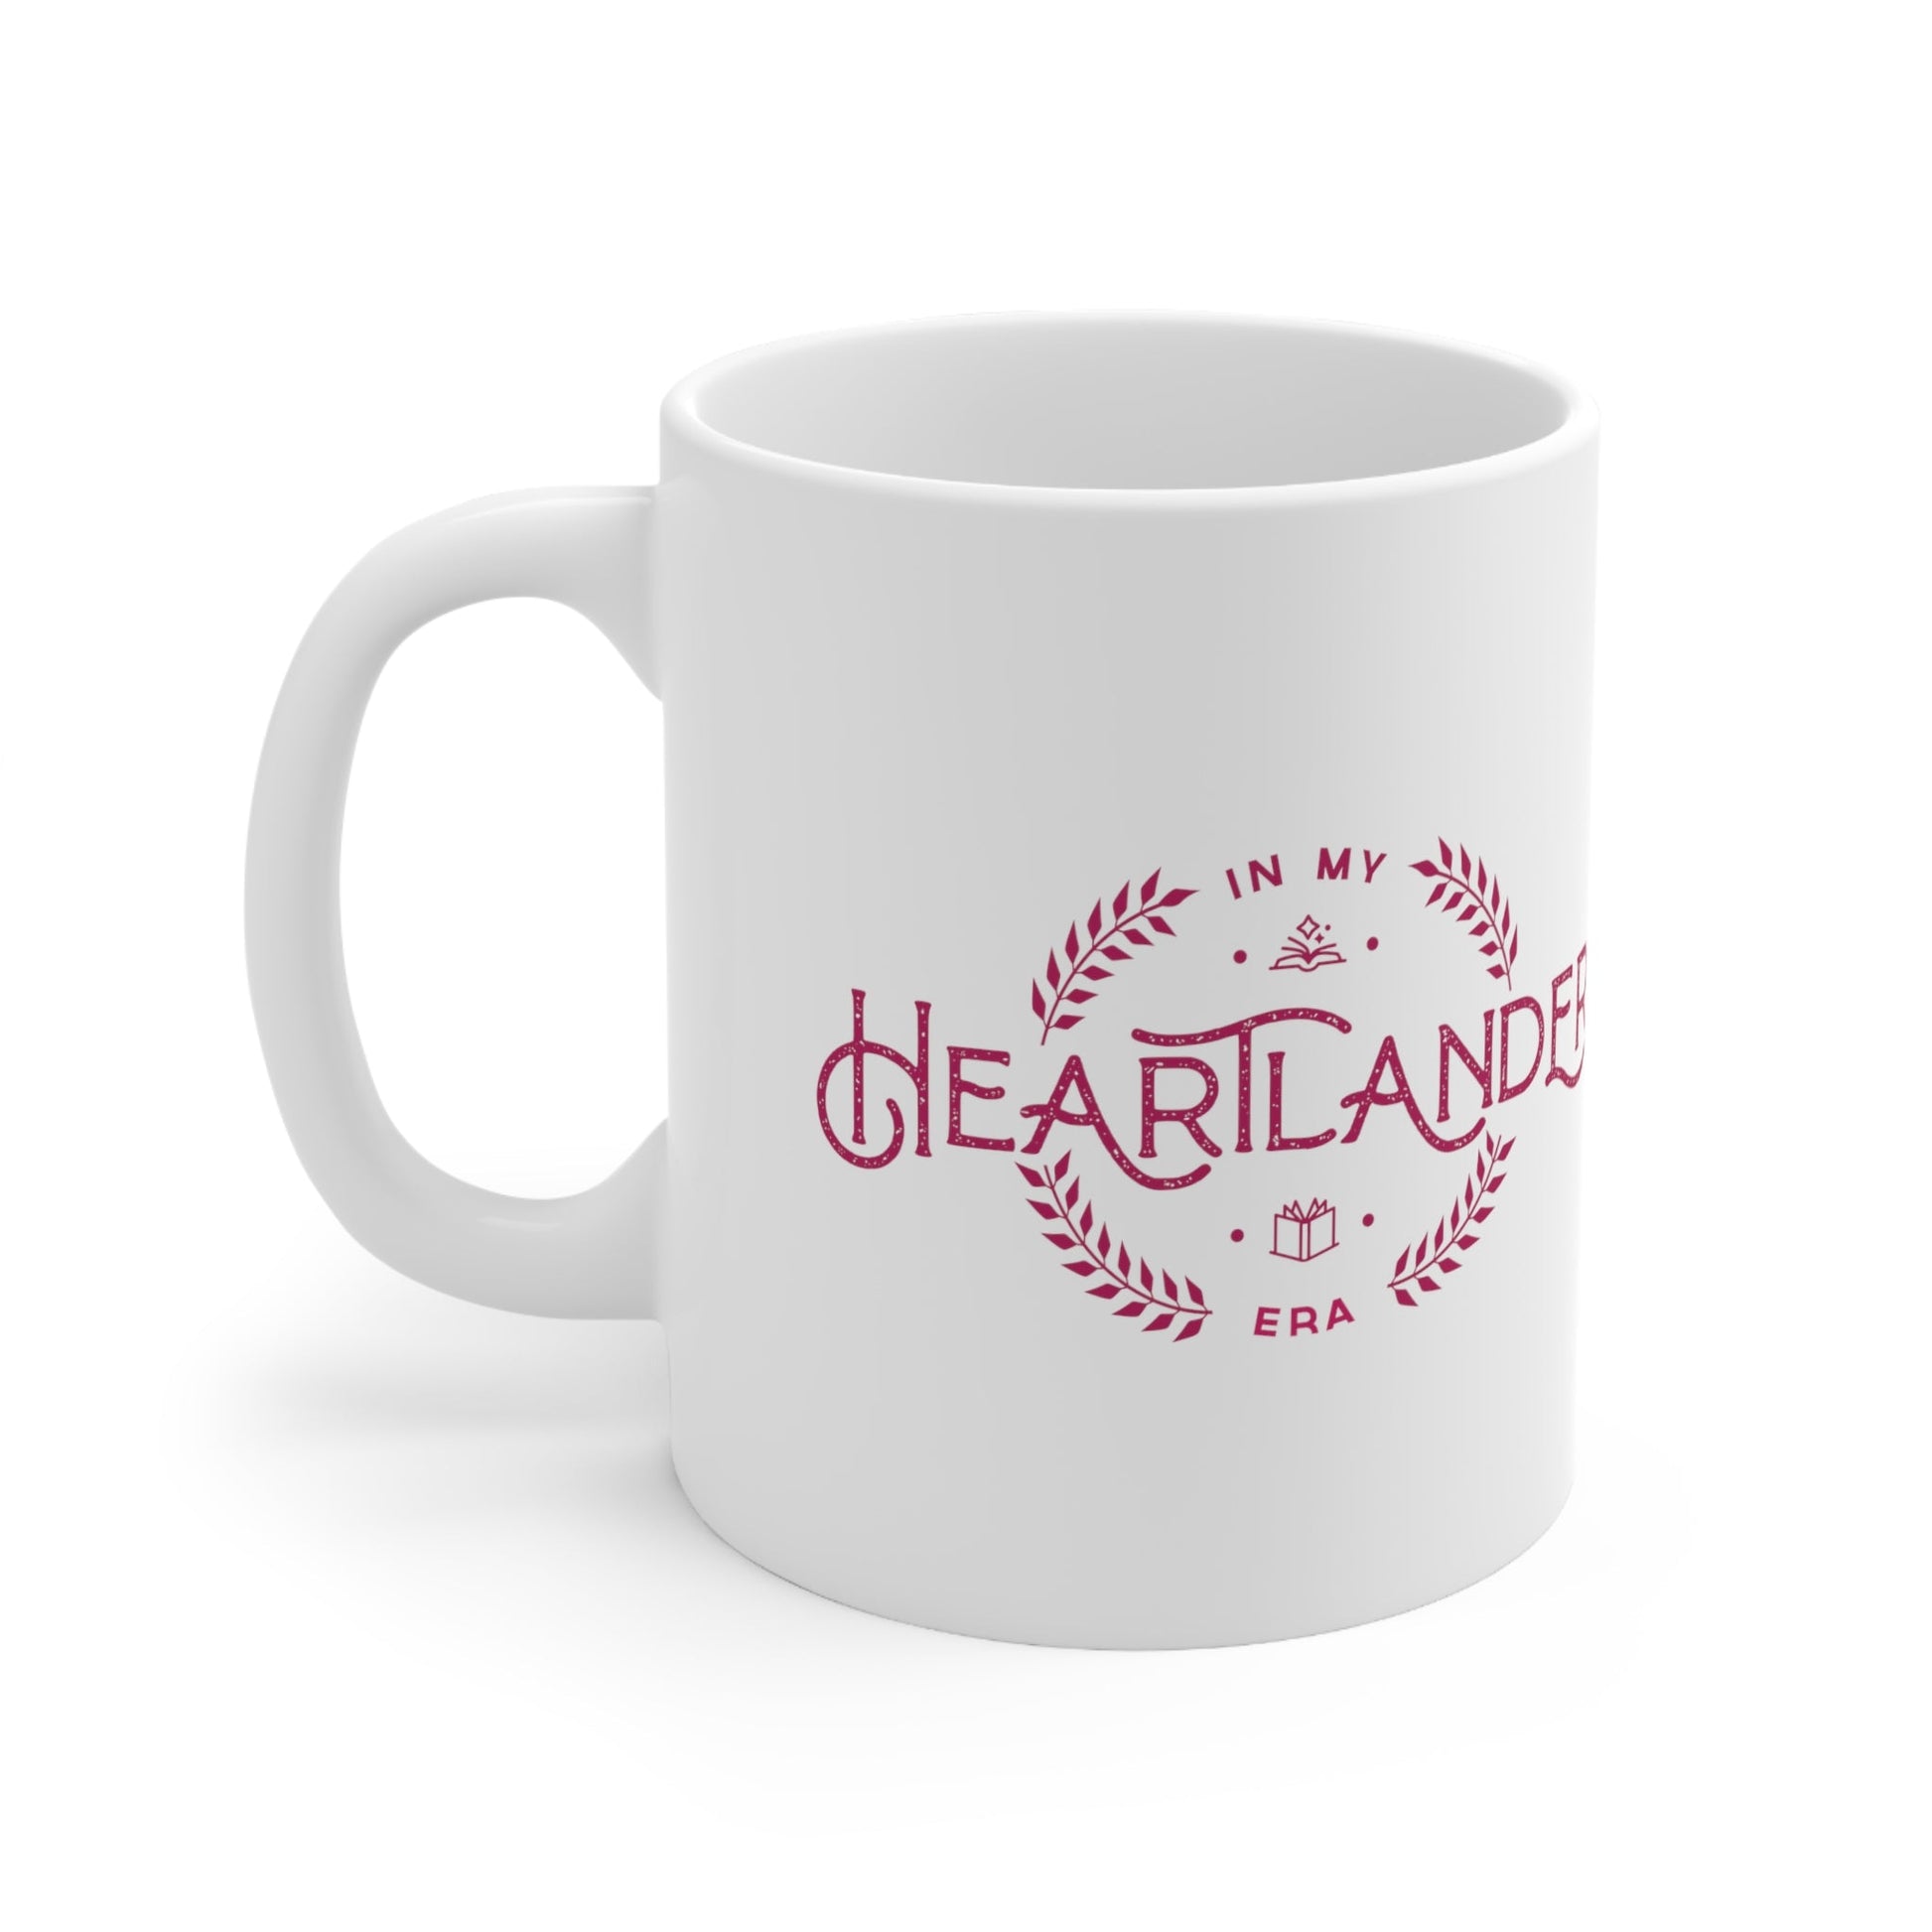 Mug - Heartlander Era Ceramic Mug 11oz